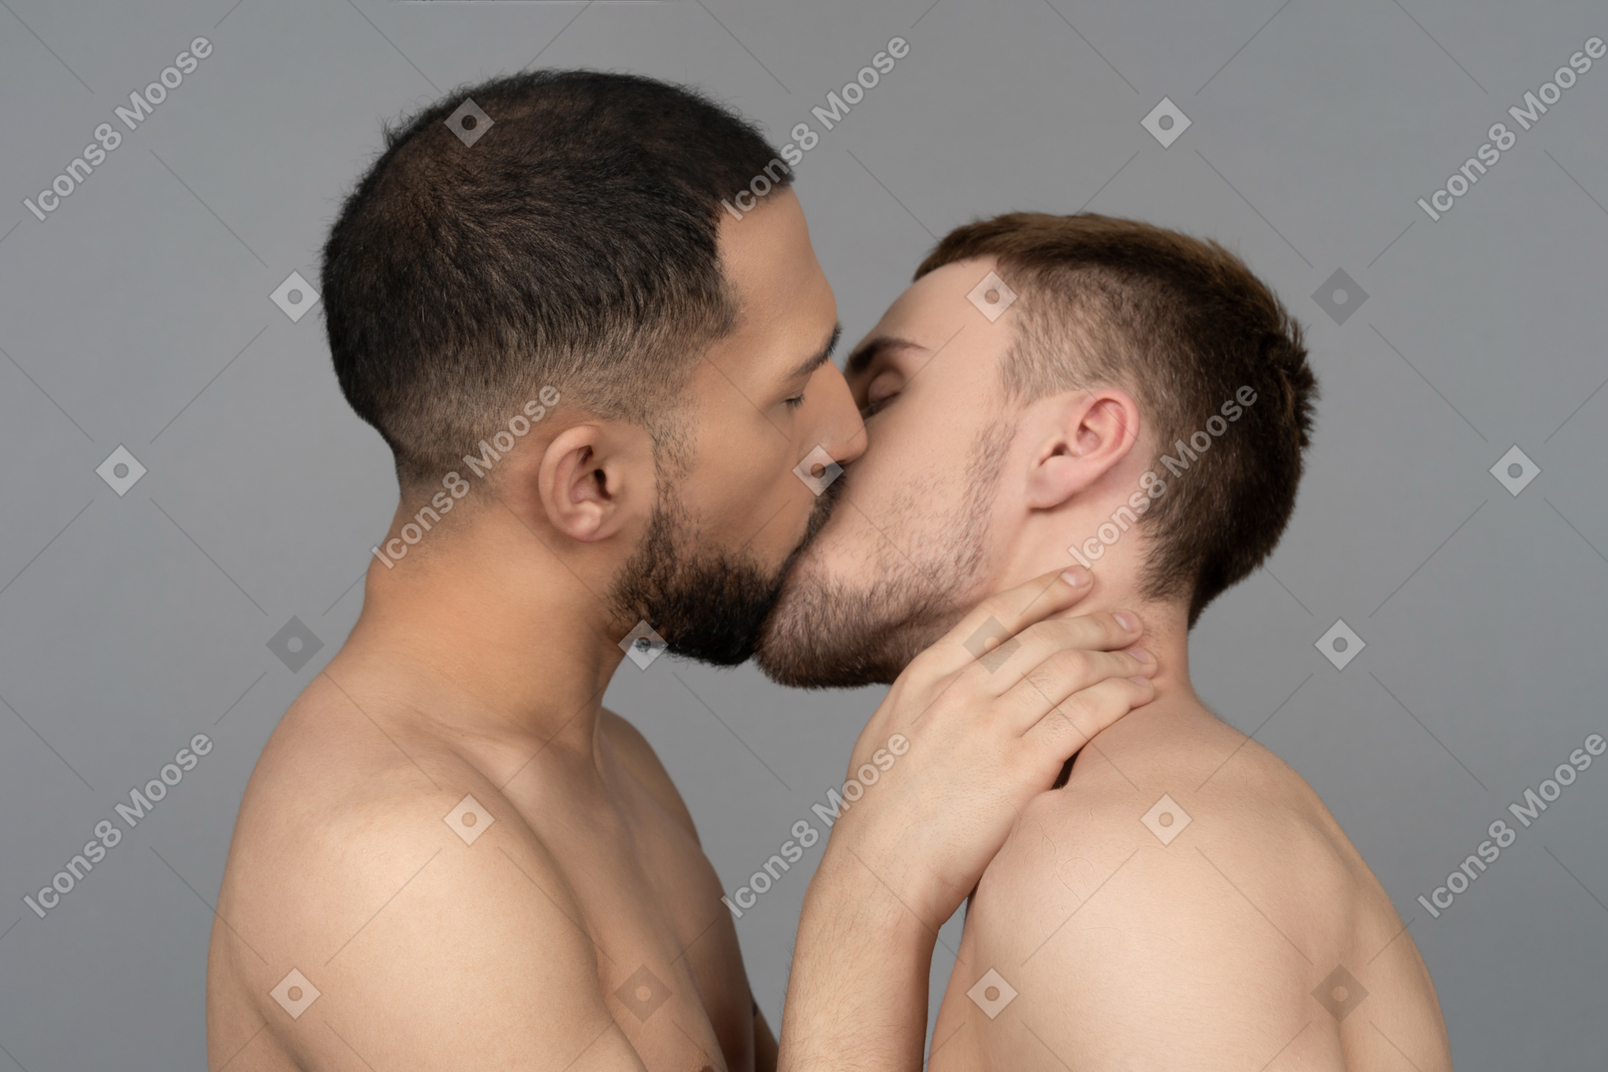 Primo piano di due uomini caucasici a torso nudo che si baciano dolcemente